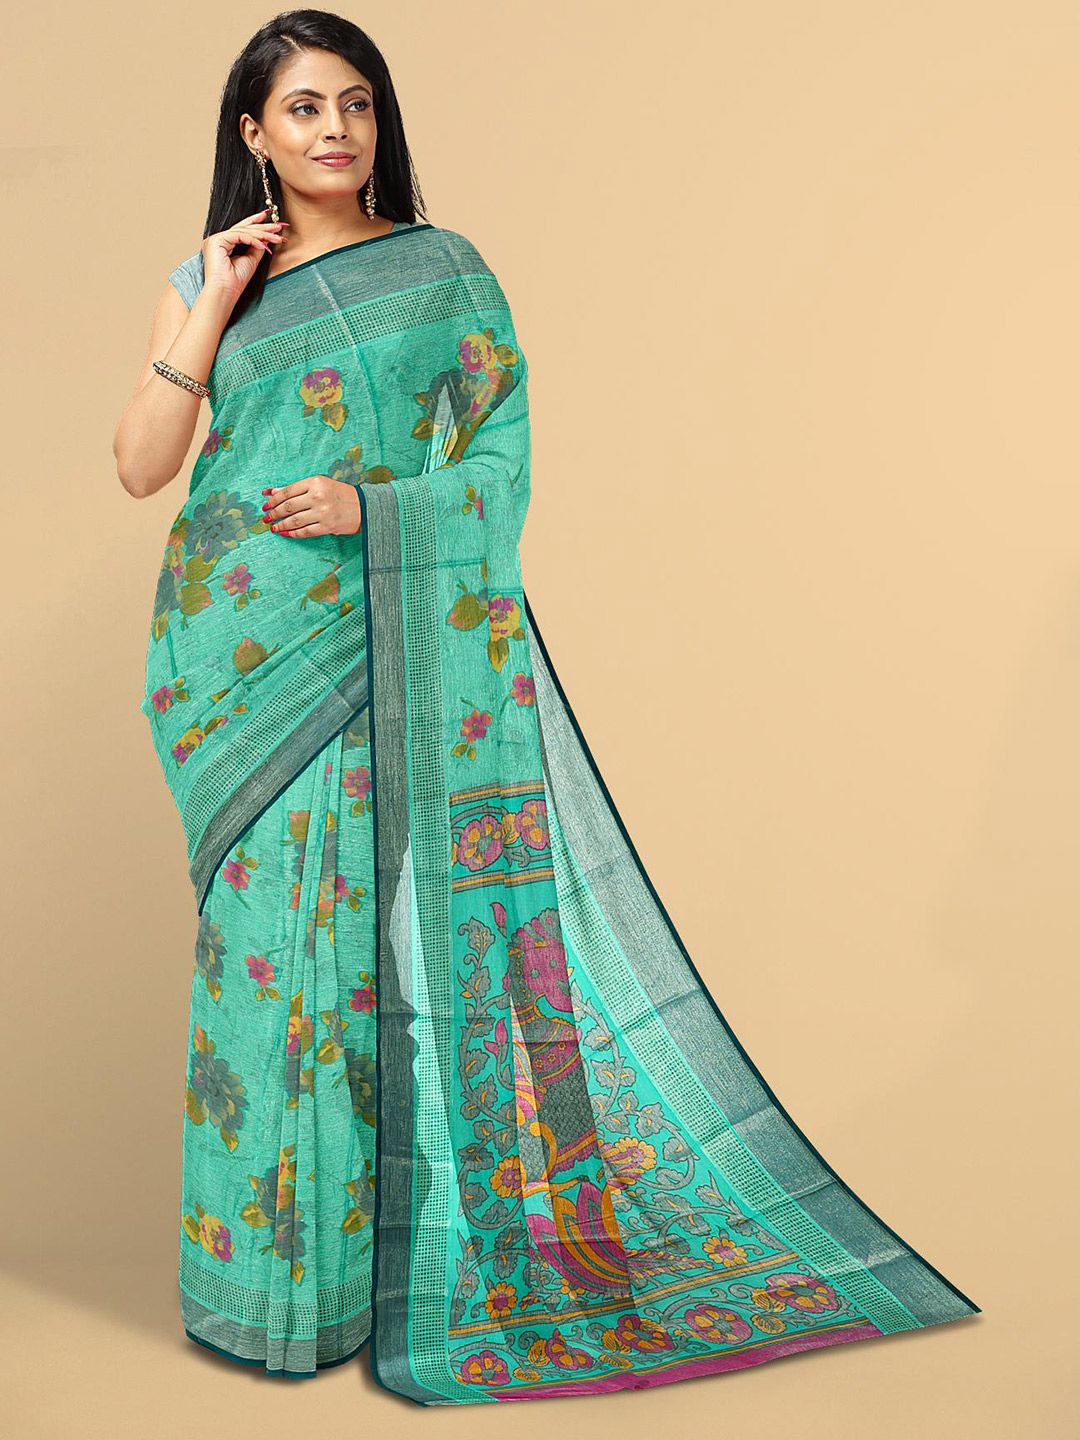 Kalamandir Blue & Pink Floral Silk Blend Saree Price in India